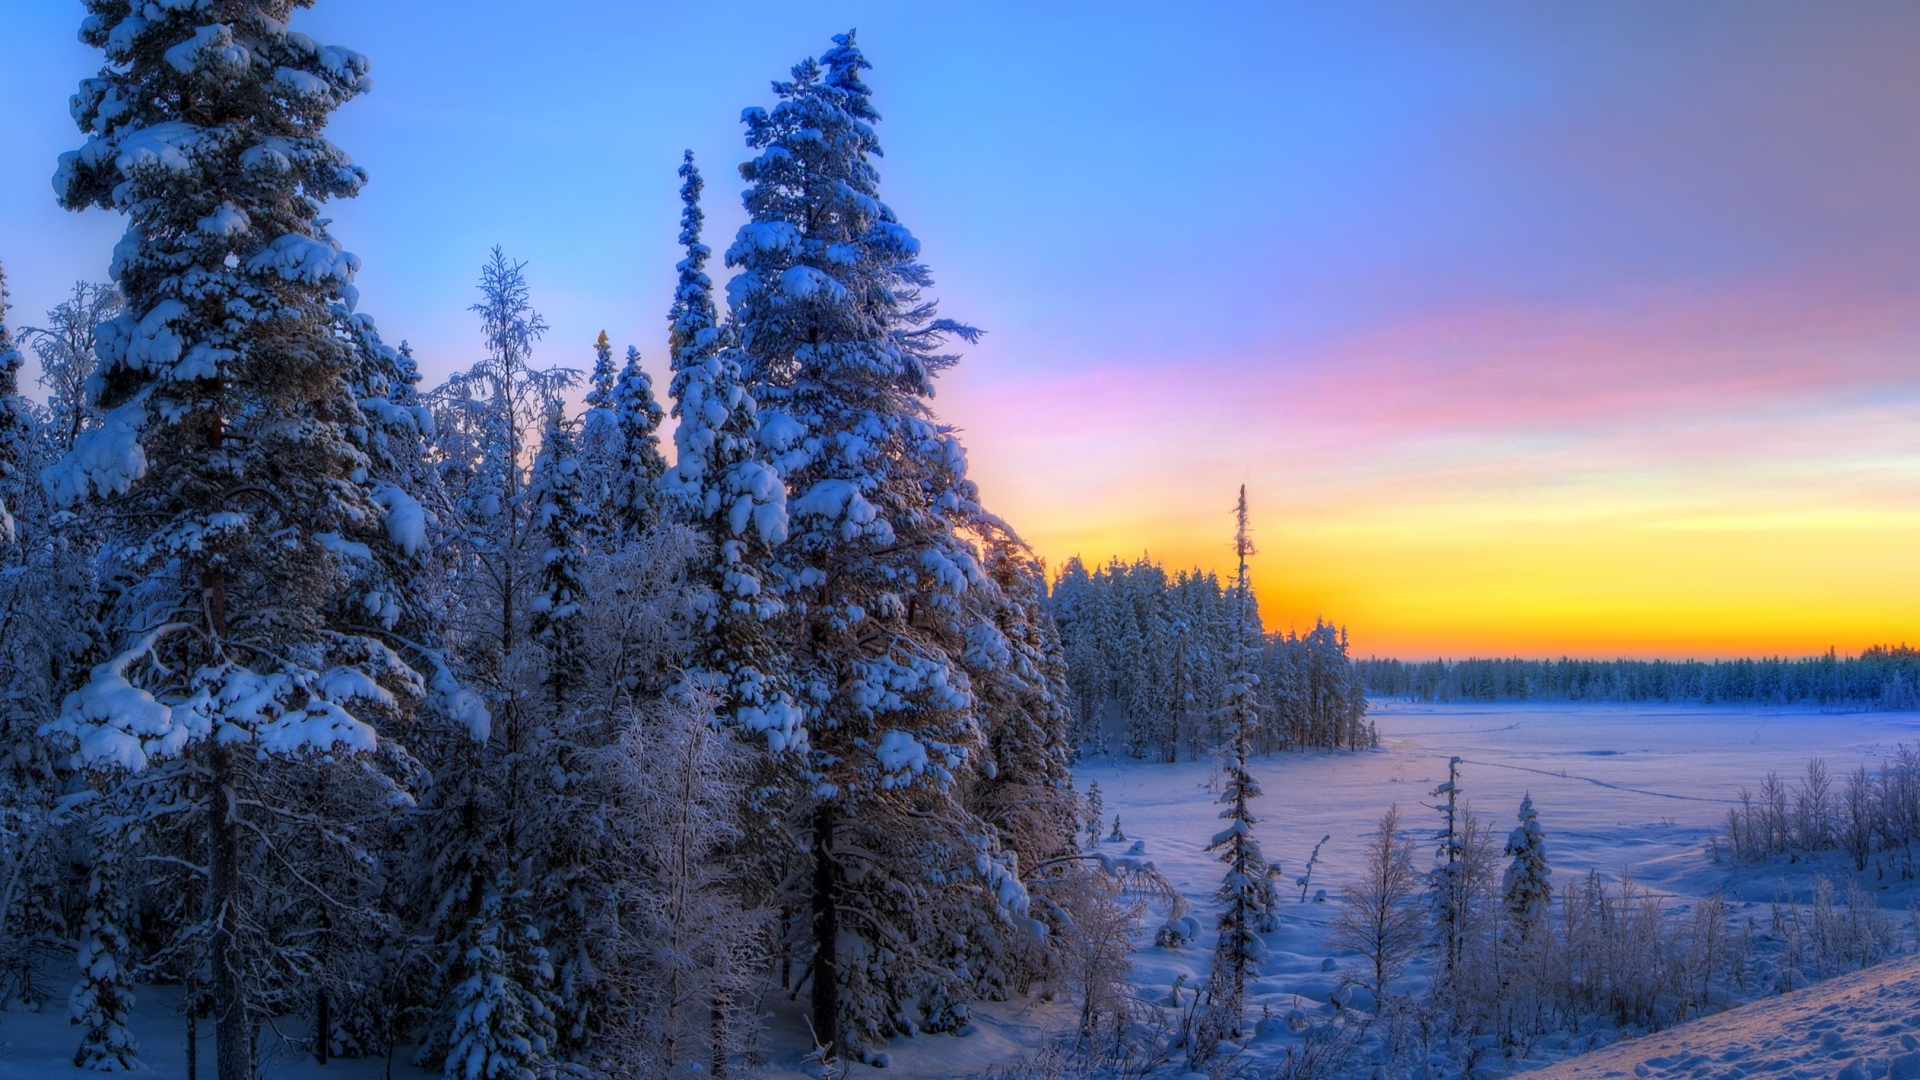 Скачать обои бесплатно Зима, Закат, Снег, Лес, Дерево, Земля/природа картинка на рабочий стол ПК